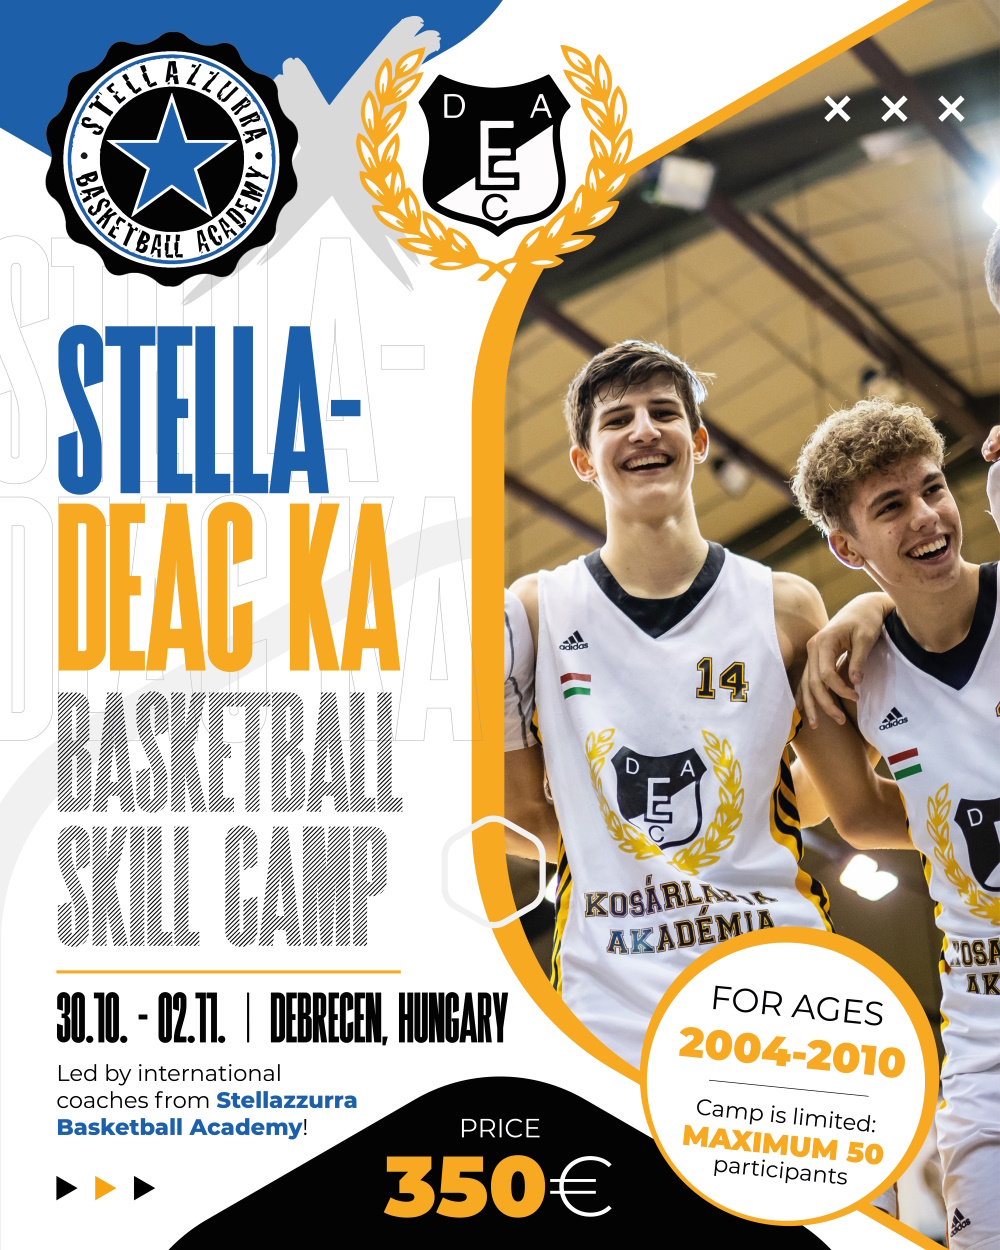 Közös egyéni edzőtábort tart a DEAC KA és a Stellazzurra Basketball Academy 